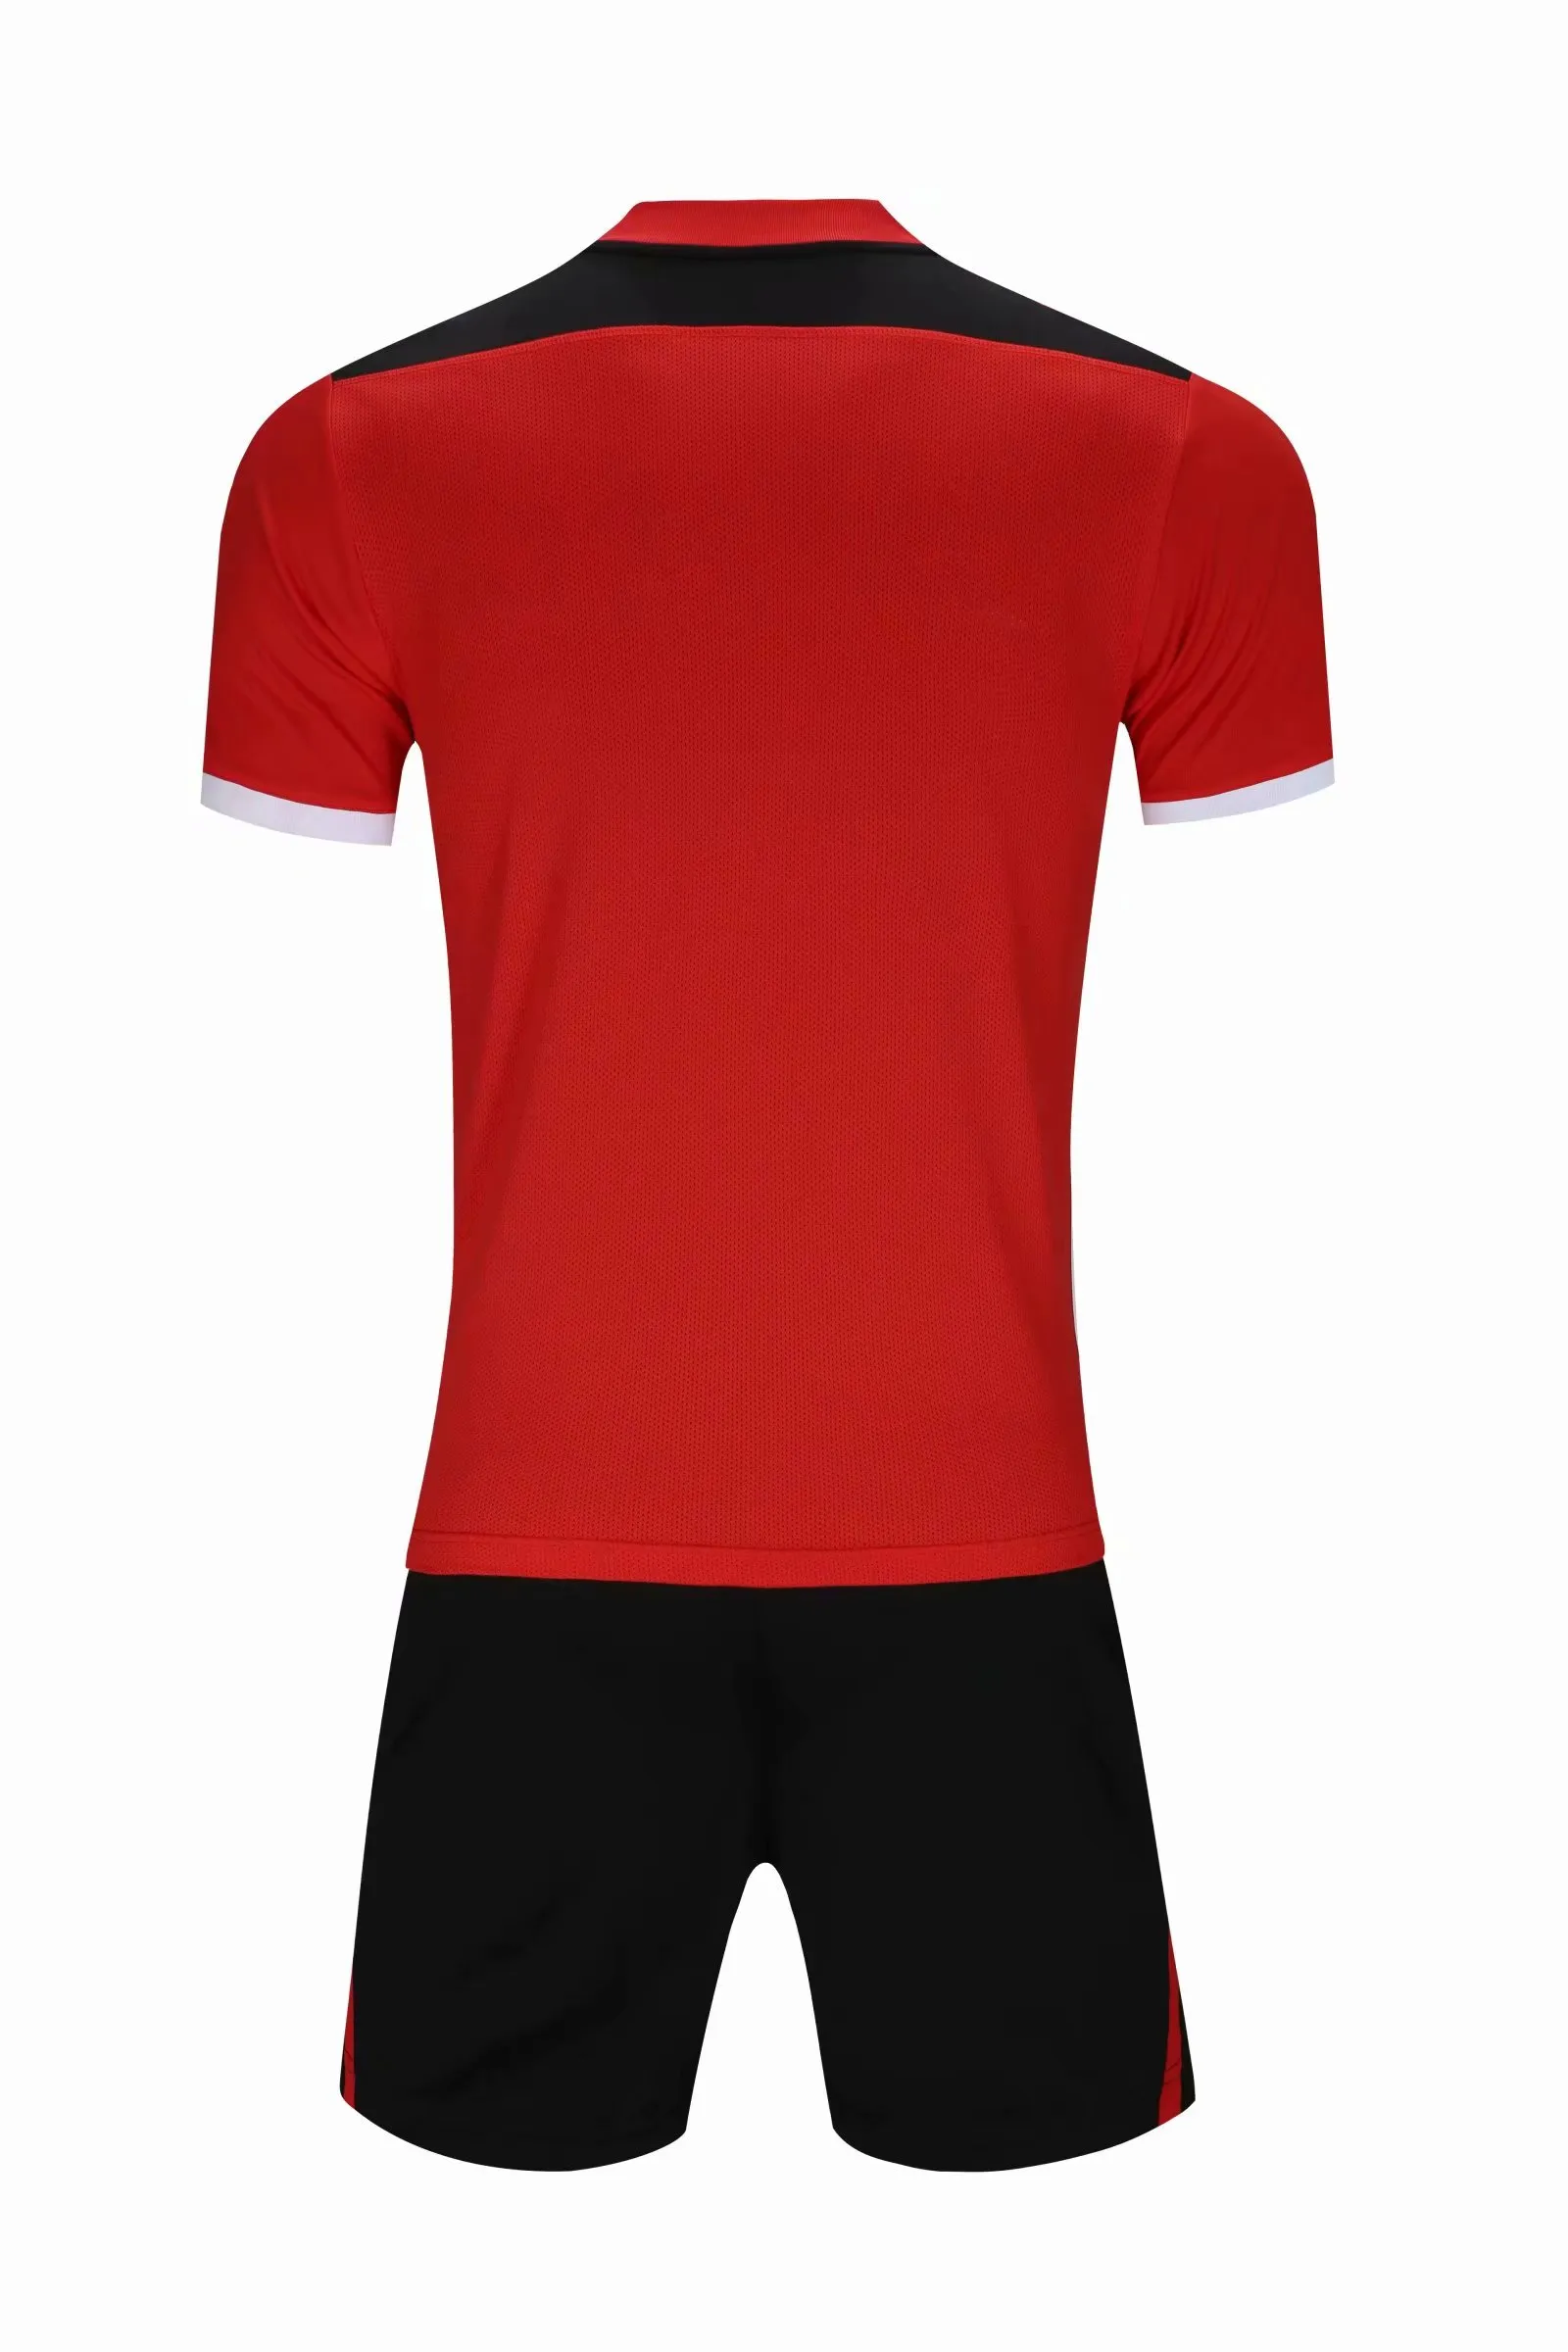 2022 스페셜 에디션 축구 저지 22 23 Camiseta de Futebol 축구 셔츠 남자 + 어린이 키트 세트 유니폼